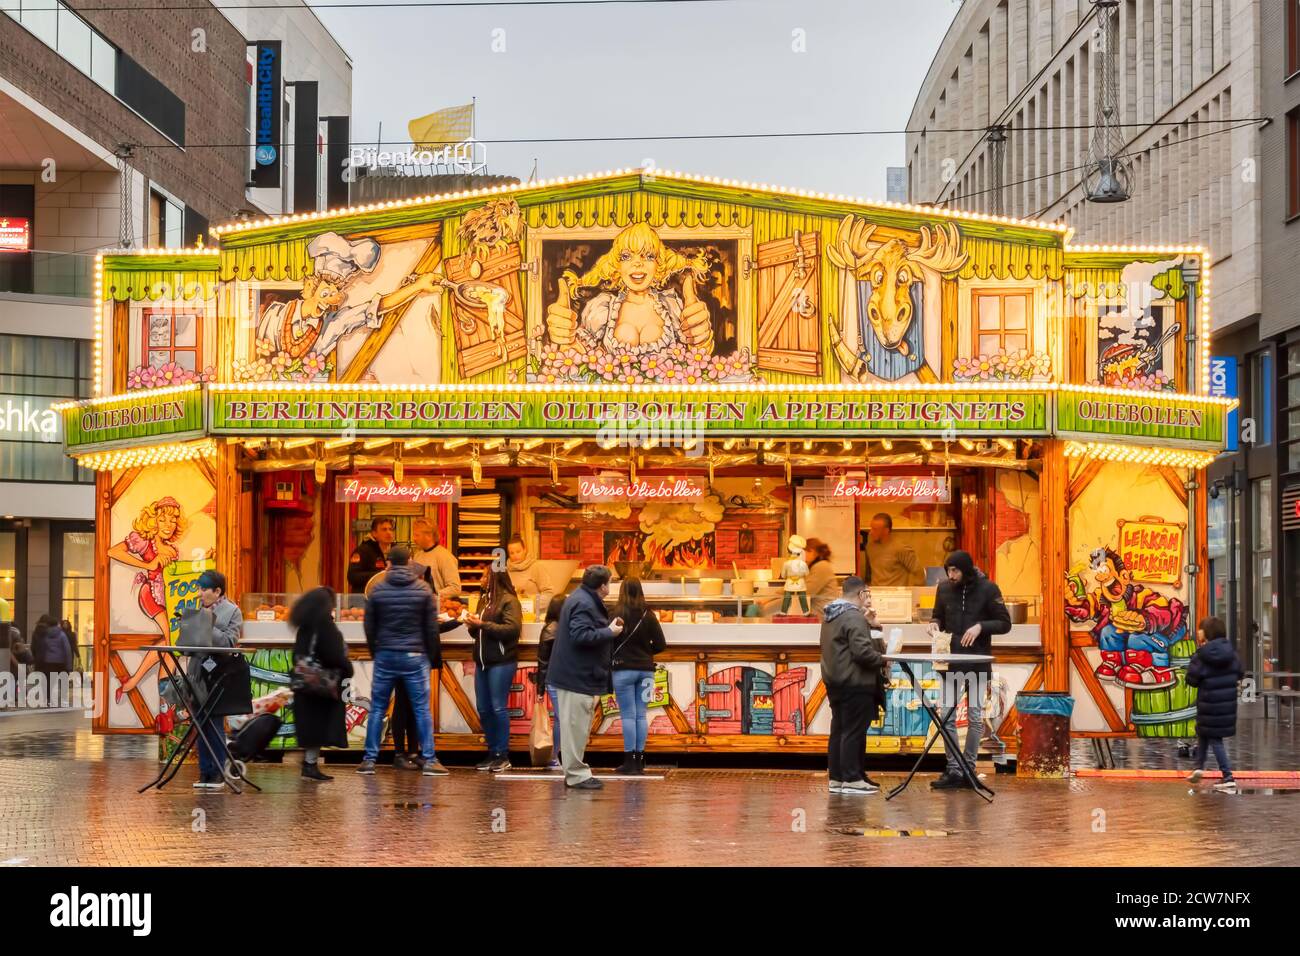 Den Haag, Niederlande - 15. Januar 2020: Stand Verkauf traditioneller holländischer "Oliebollen" (frittierte Teigkugeln) im Winter im Stadtzentrum von T Stockfoto